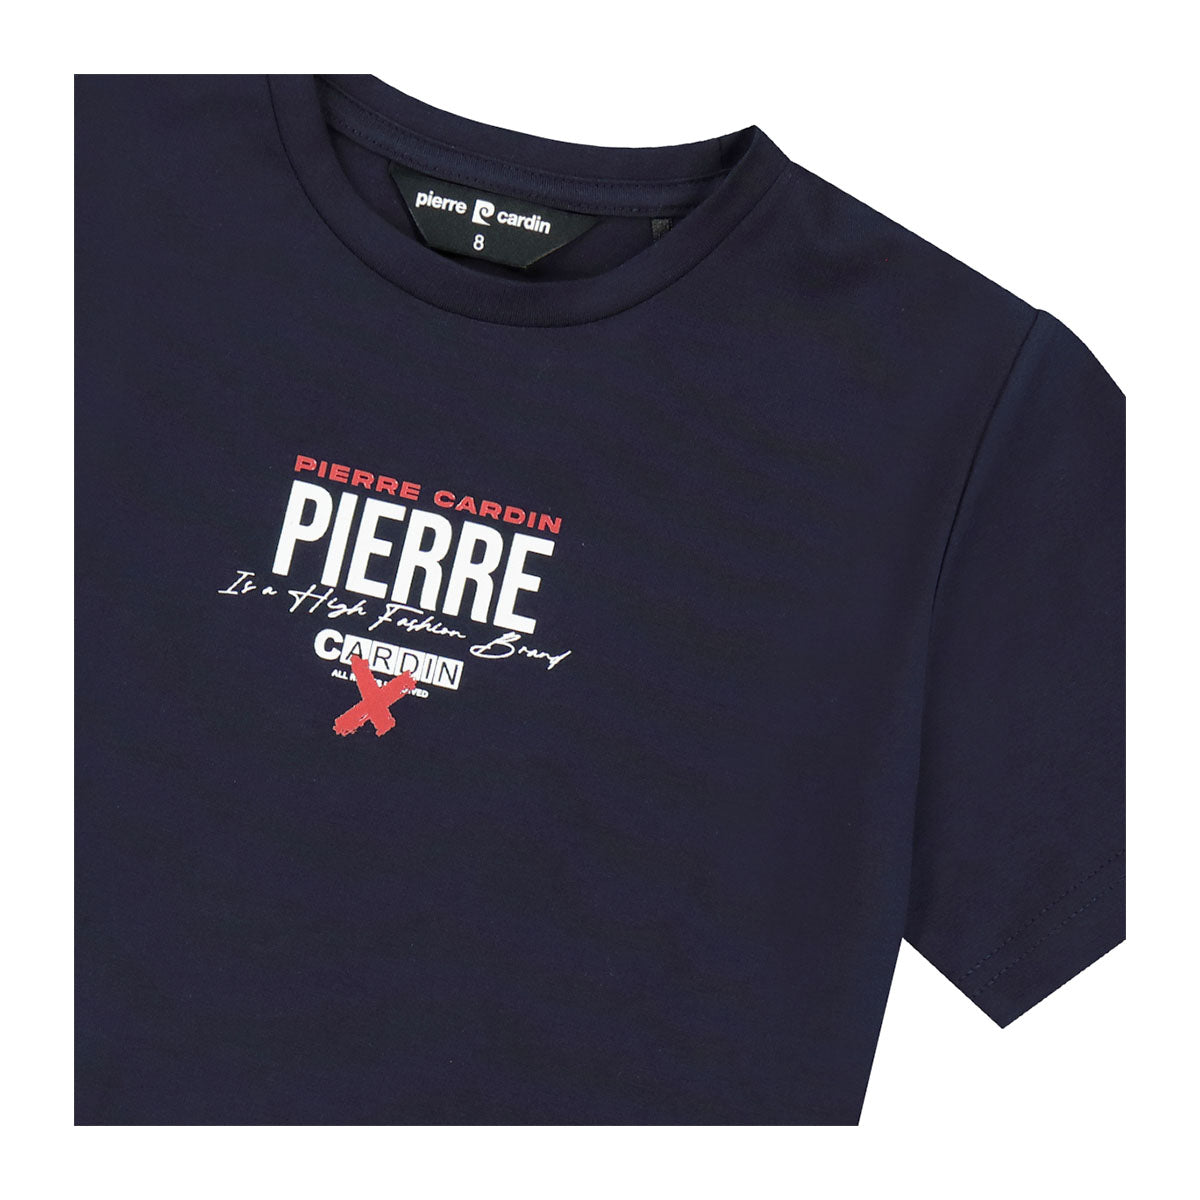 חולצת טי שרט PIERRE CARDIN לוגו אחורי לילדים